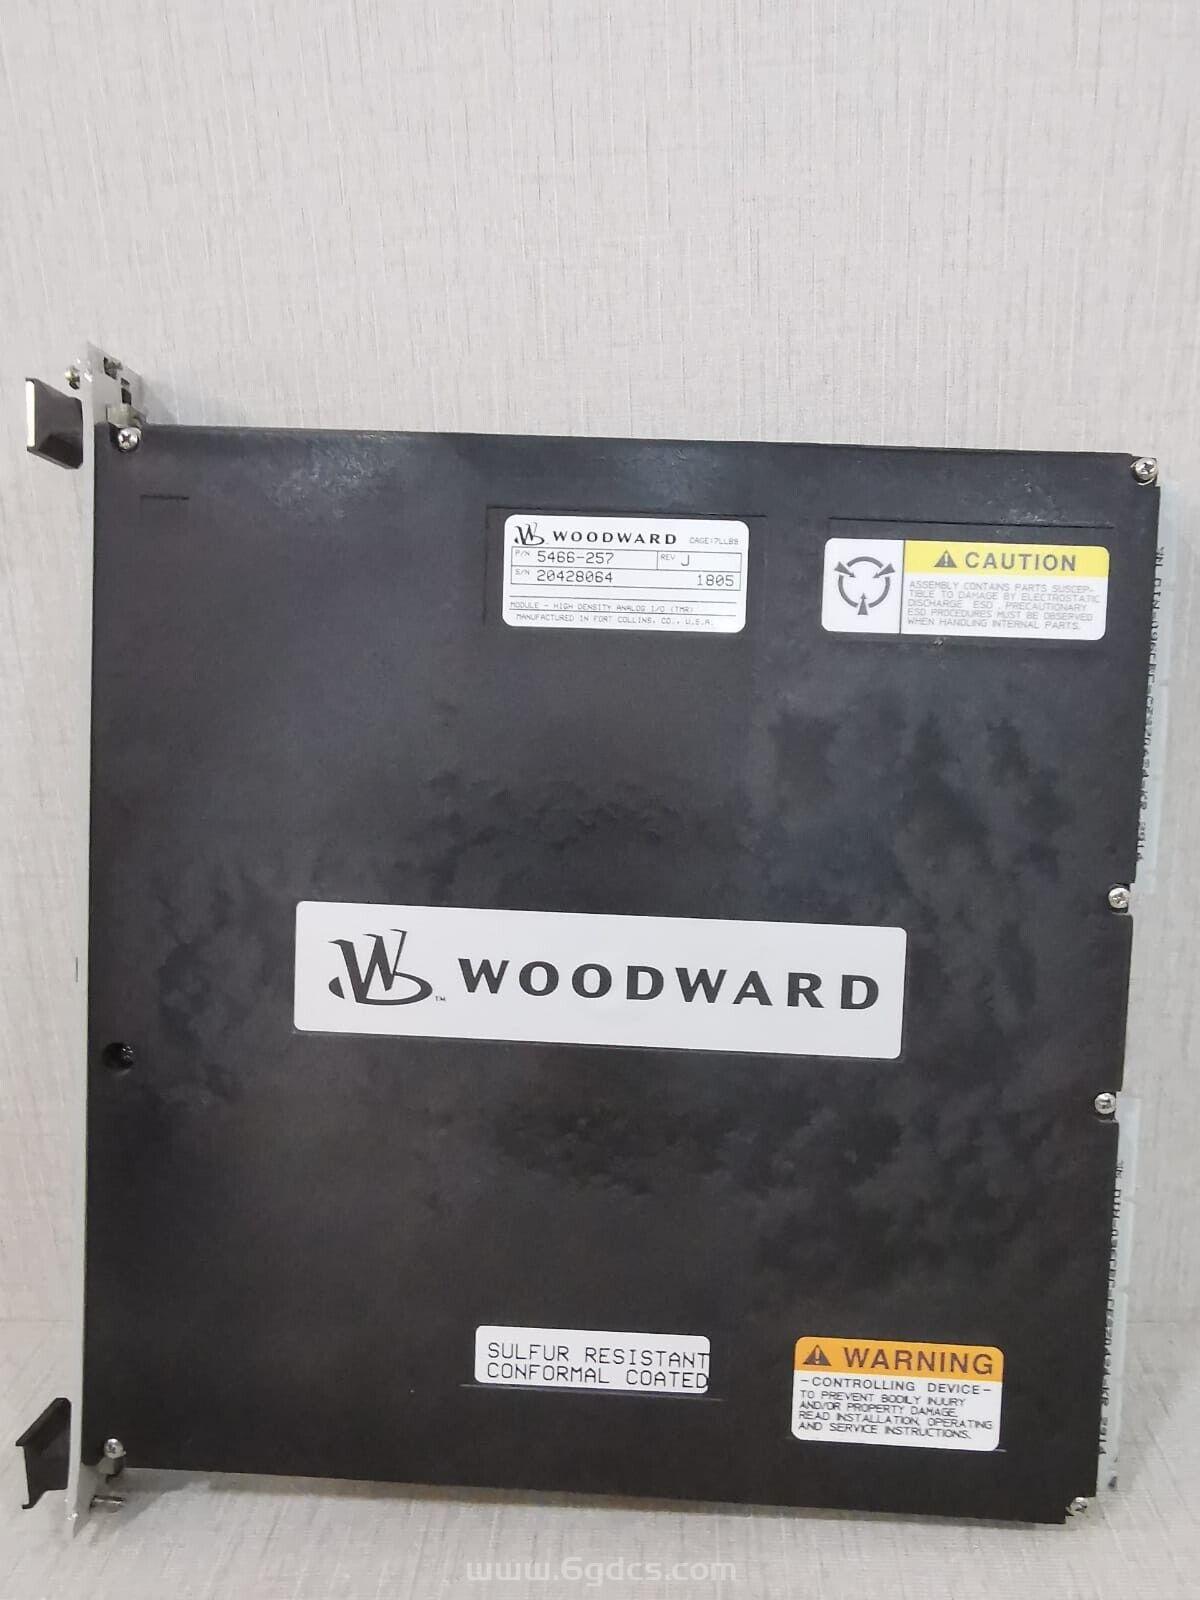 (5466-257 高密度分析 I/O 模块) WOODWARD伍德沃德 原装进口 正品全新现货 价格优惠